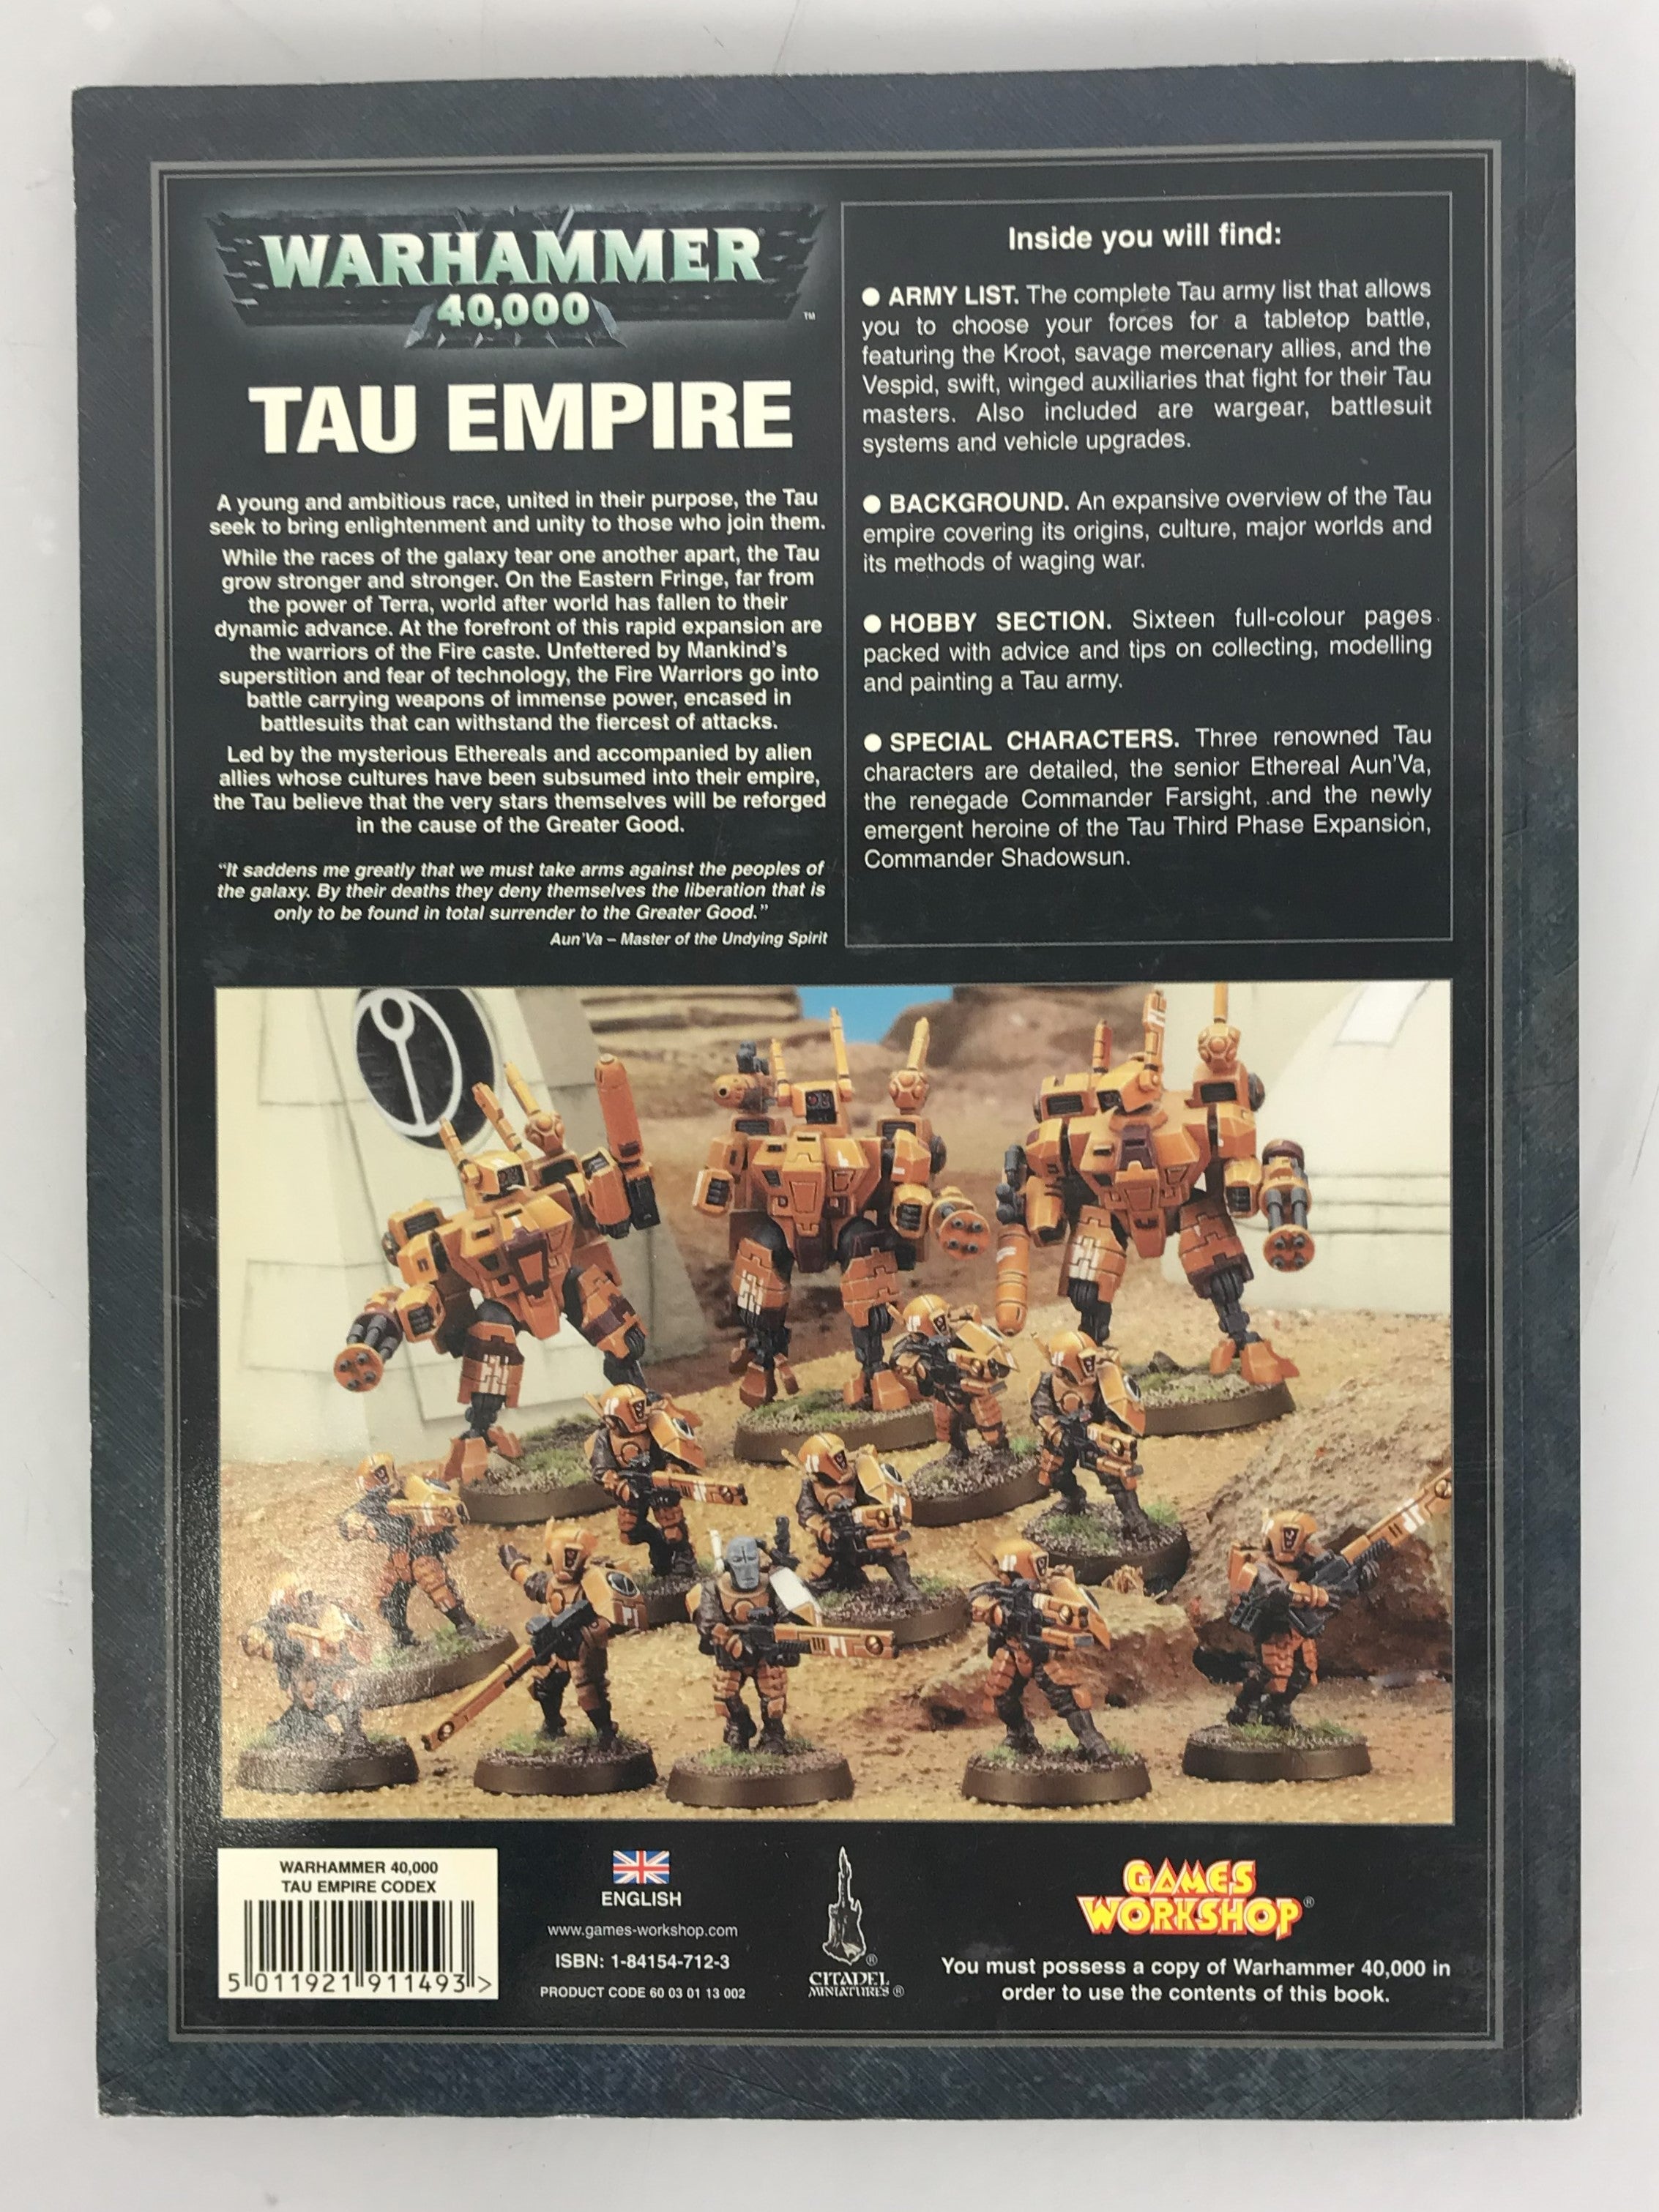 Warhammer 40,000 Codex Tau Empire 2005